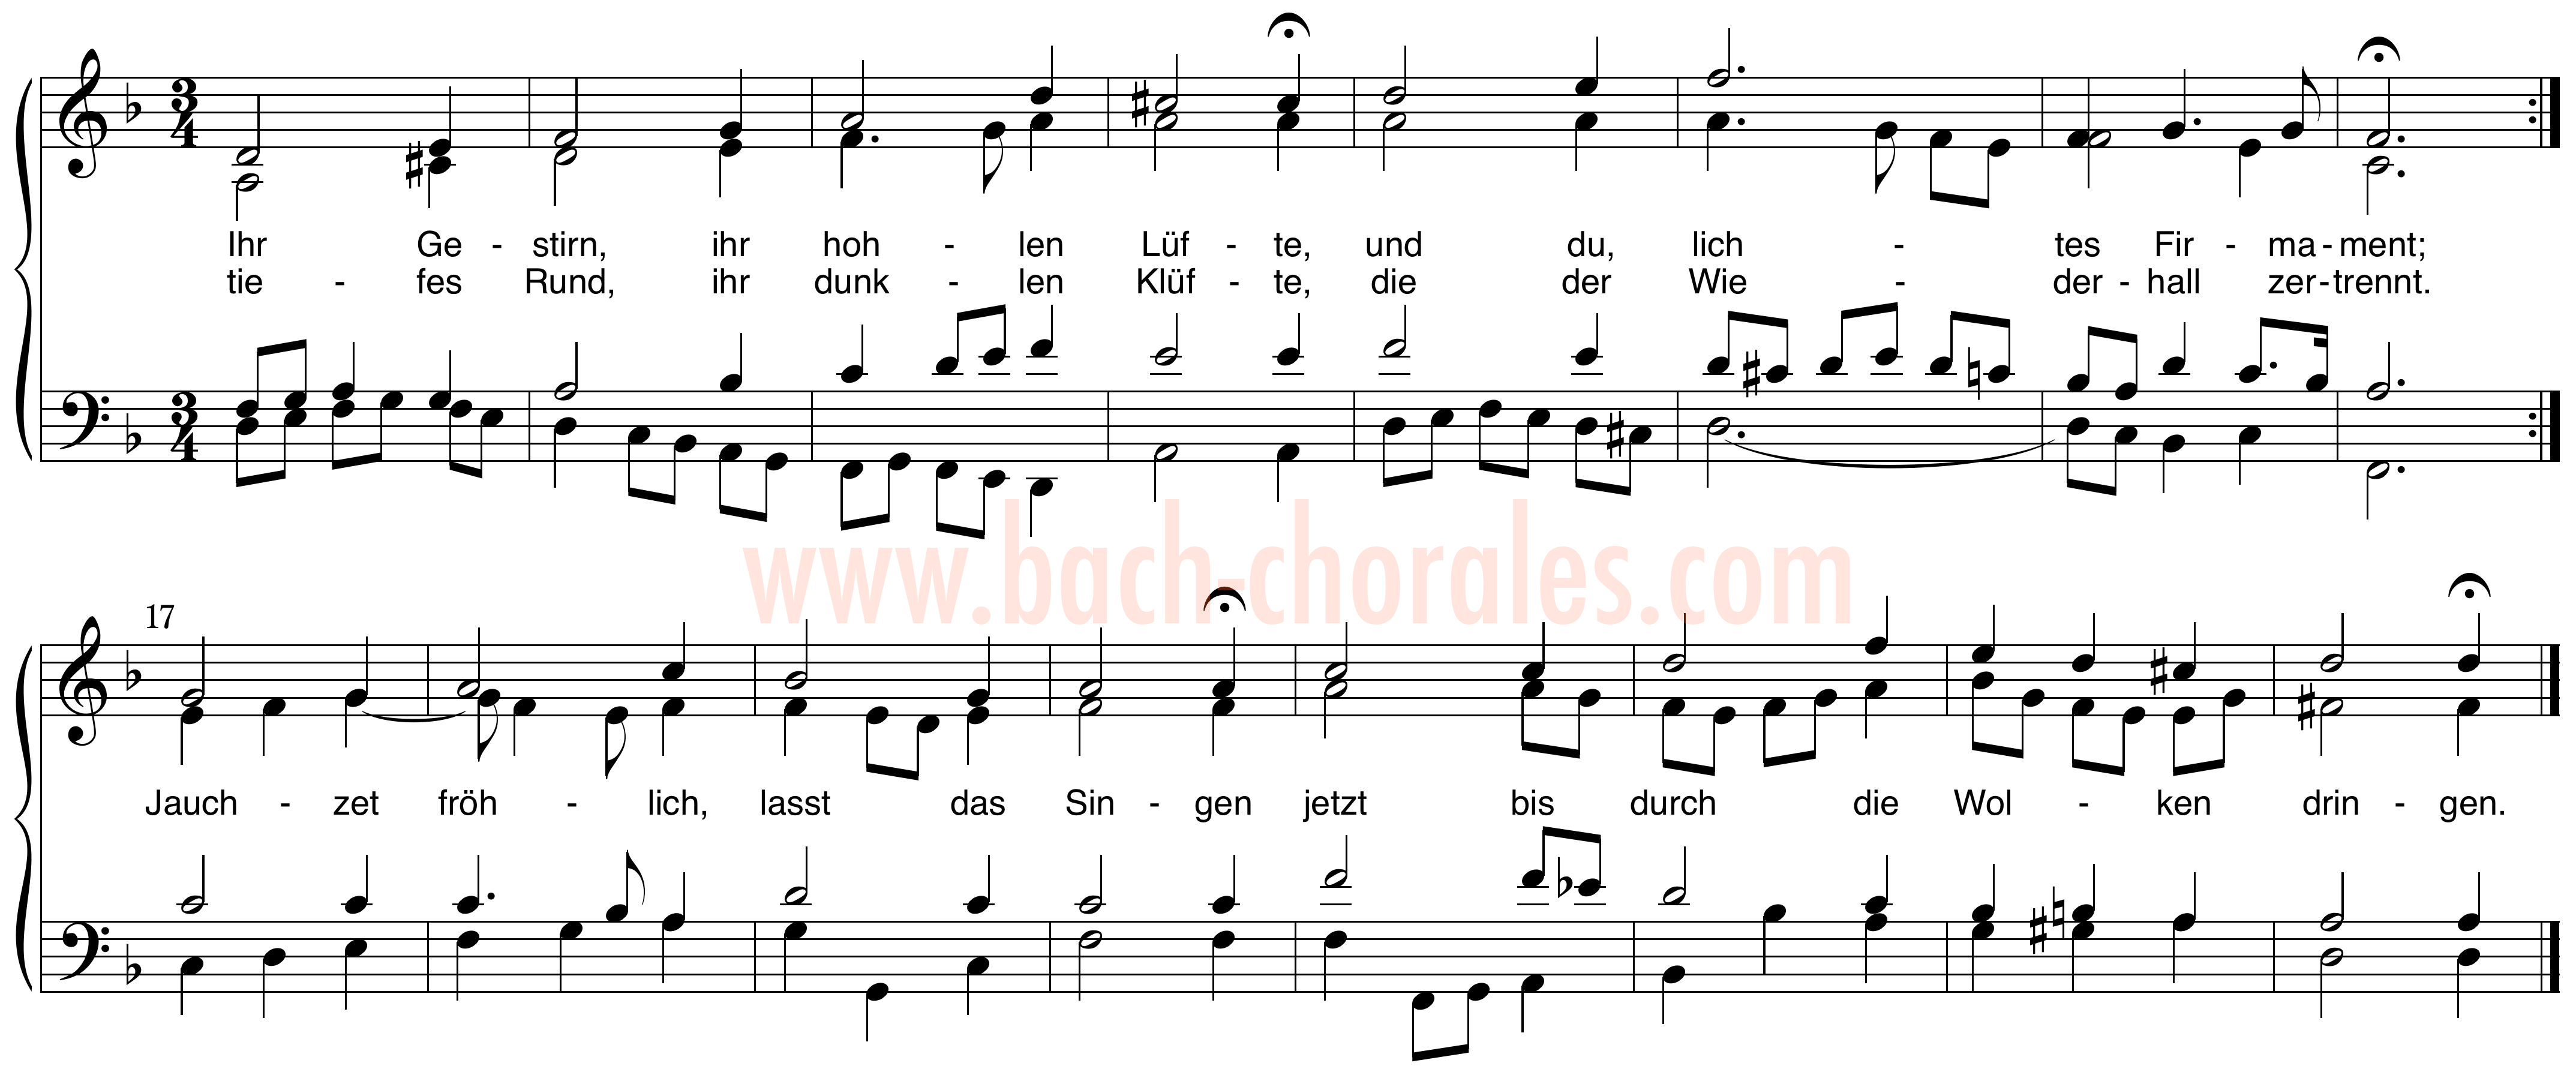 notenbeeld BWV 366 op https://www.bach-chorales.com/